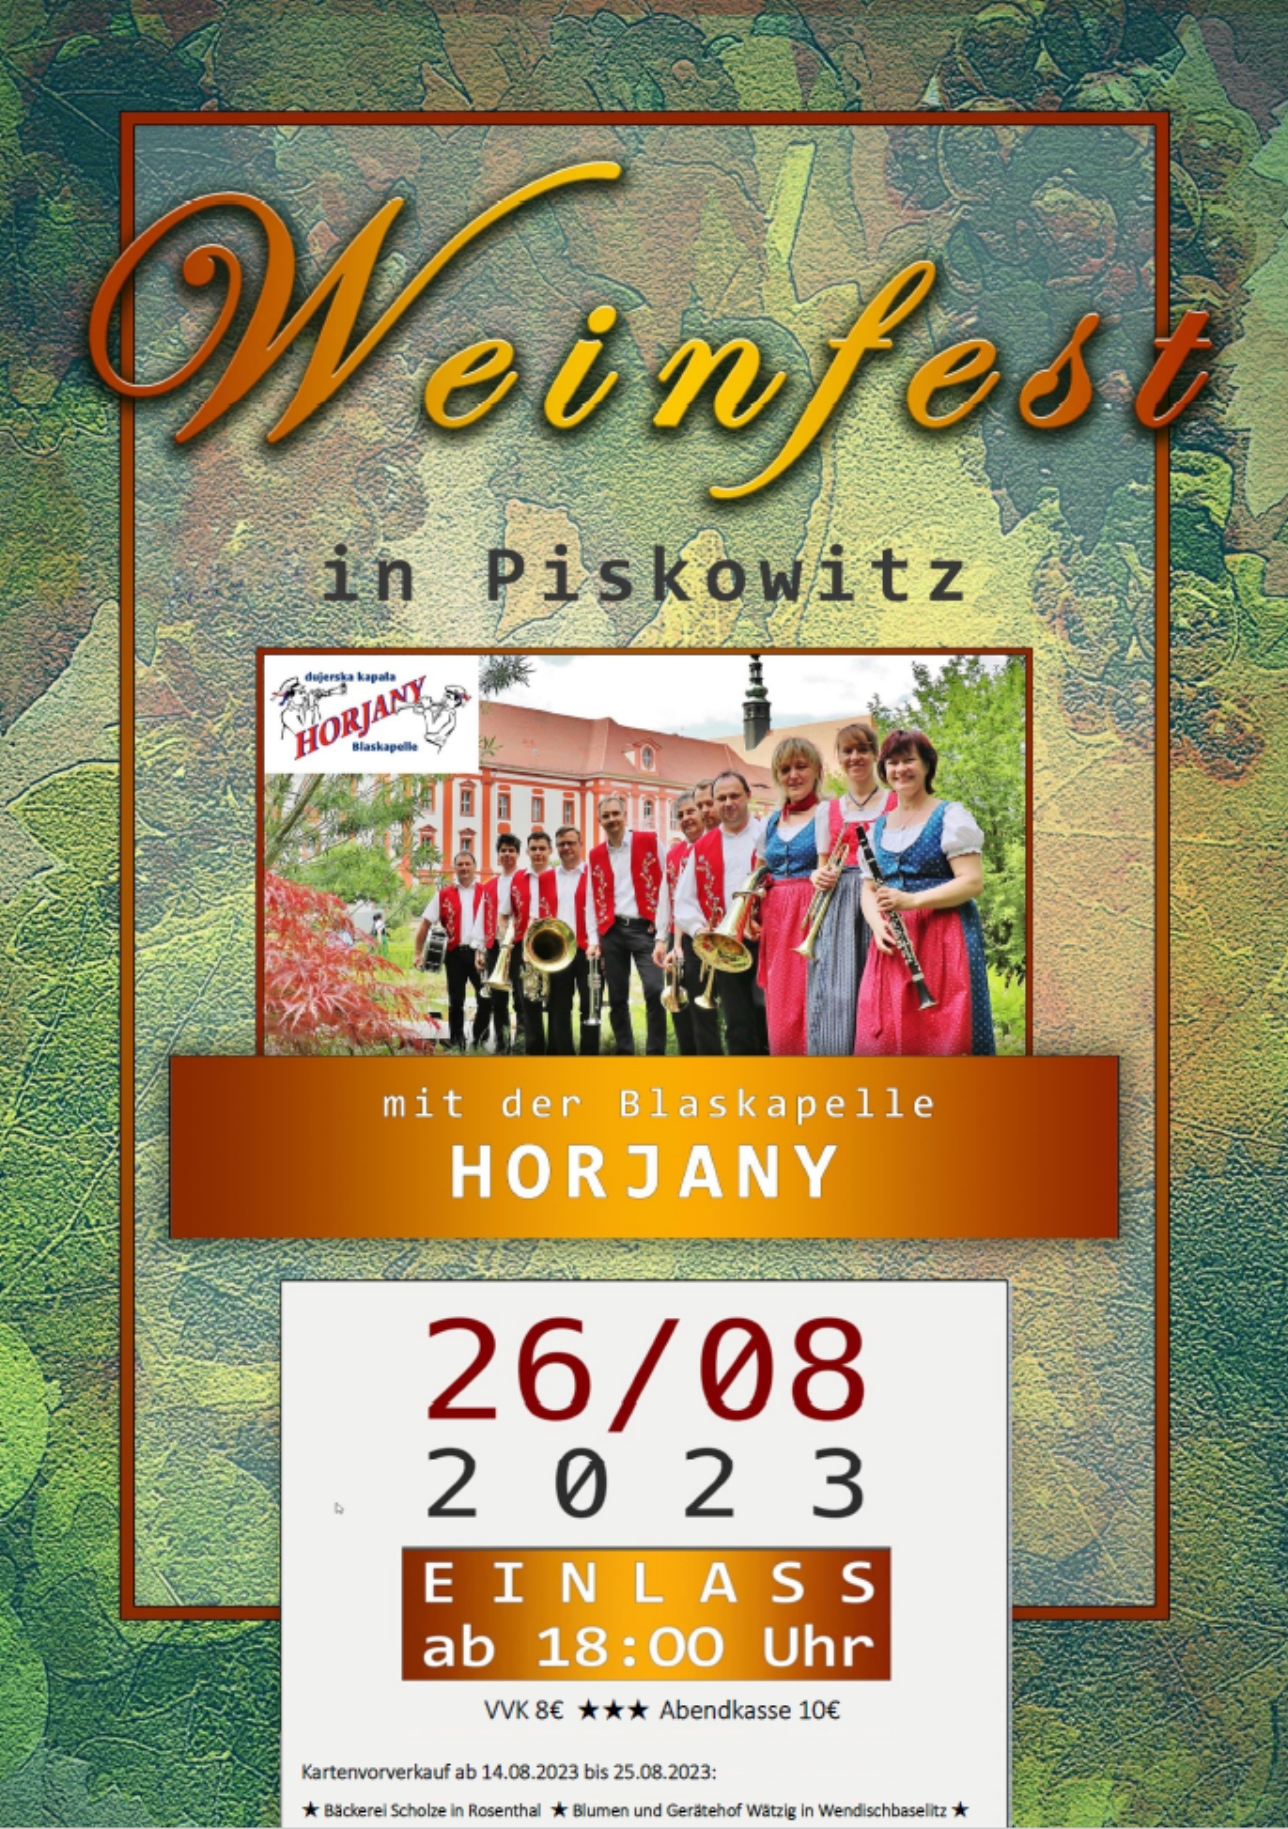 2023 08 26 Weinfest Piskowitz